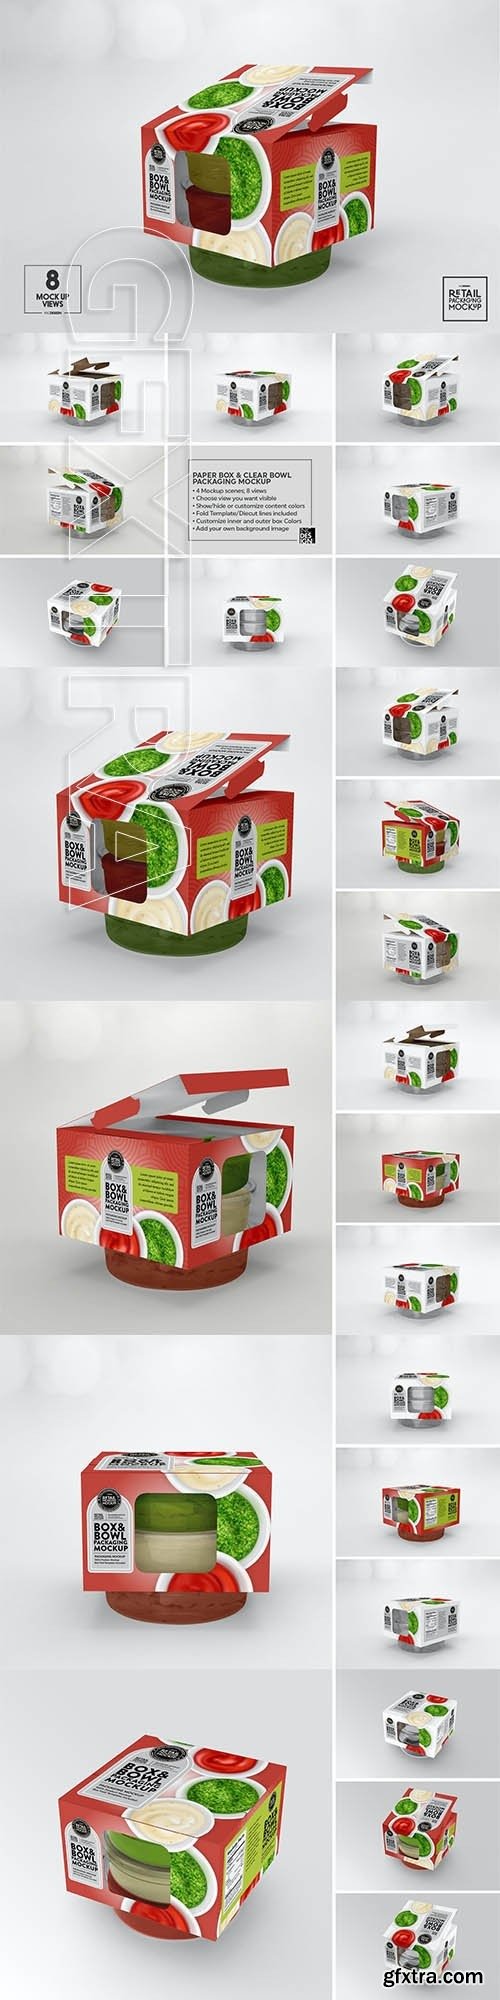 CreativeMarket - Box and Bowl Packaging Mockup 5912793